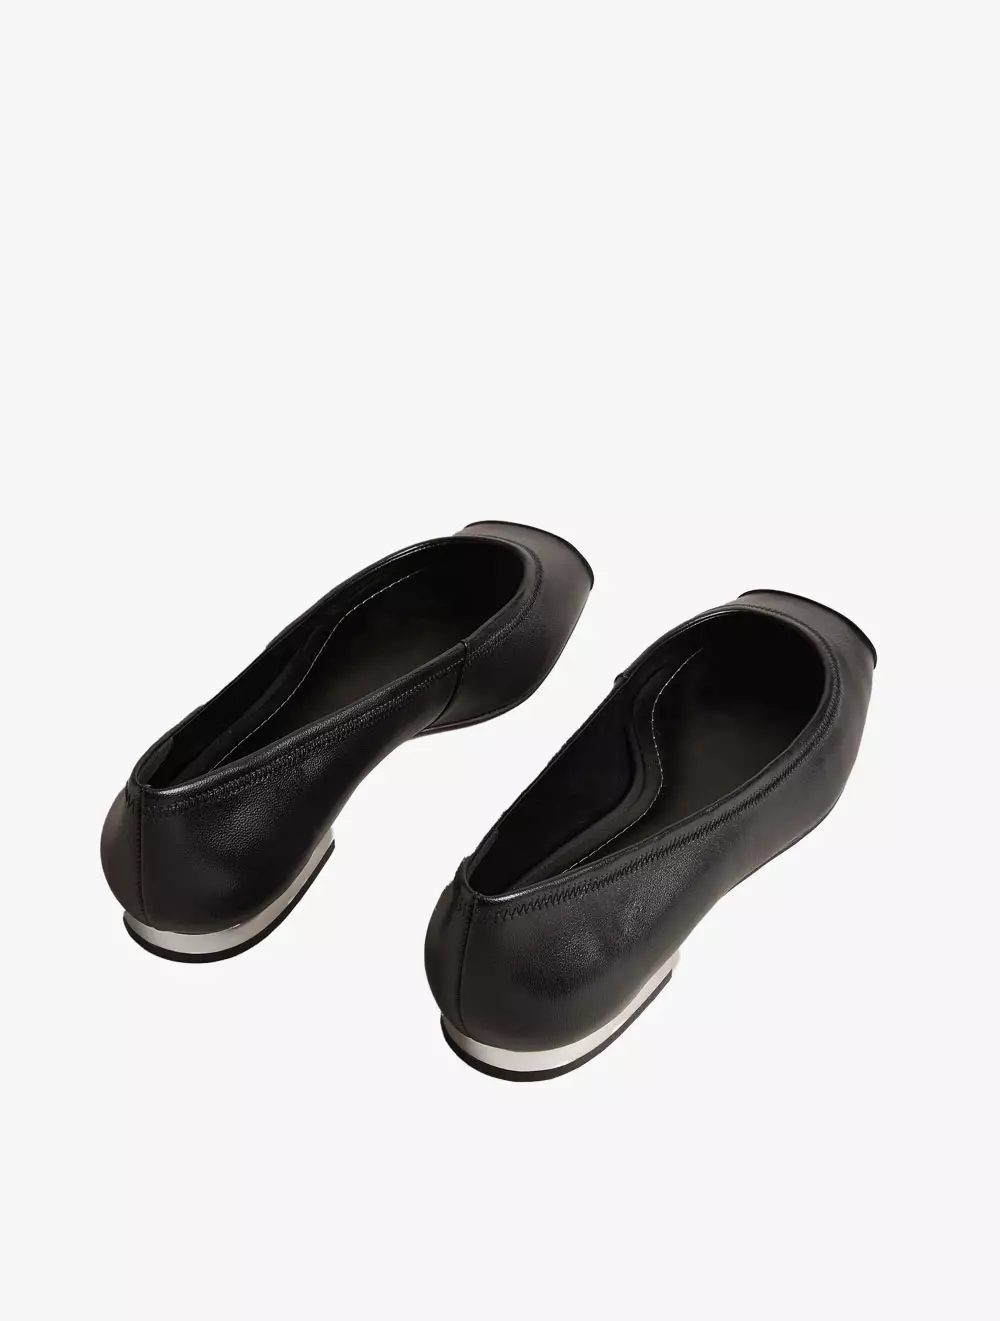 Jual Ted Baker KAREH Ballet Shoes With Metal Toe Cap - Black Original ...